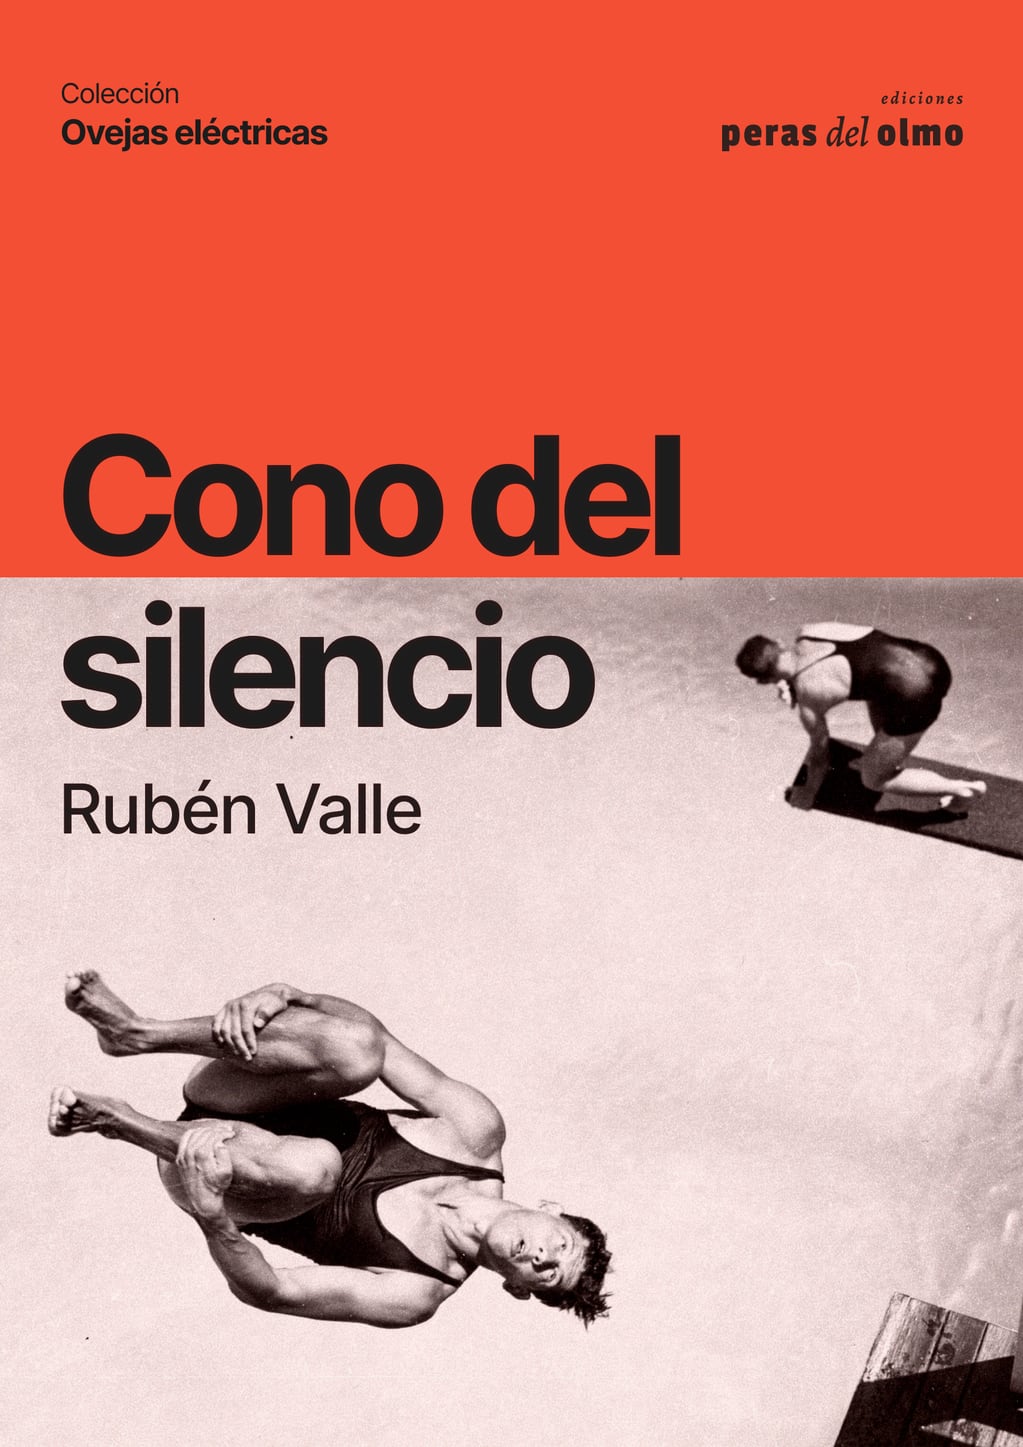 Portada del nuevo libro de Rubén Valle.